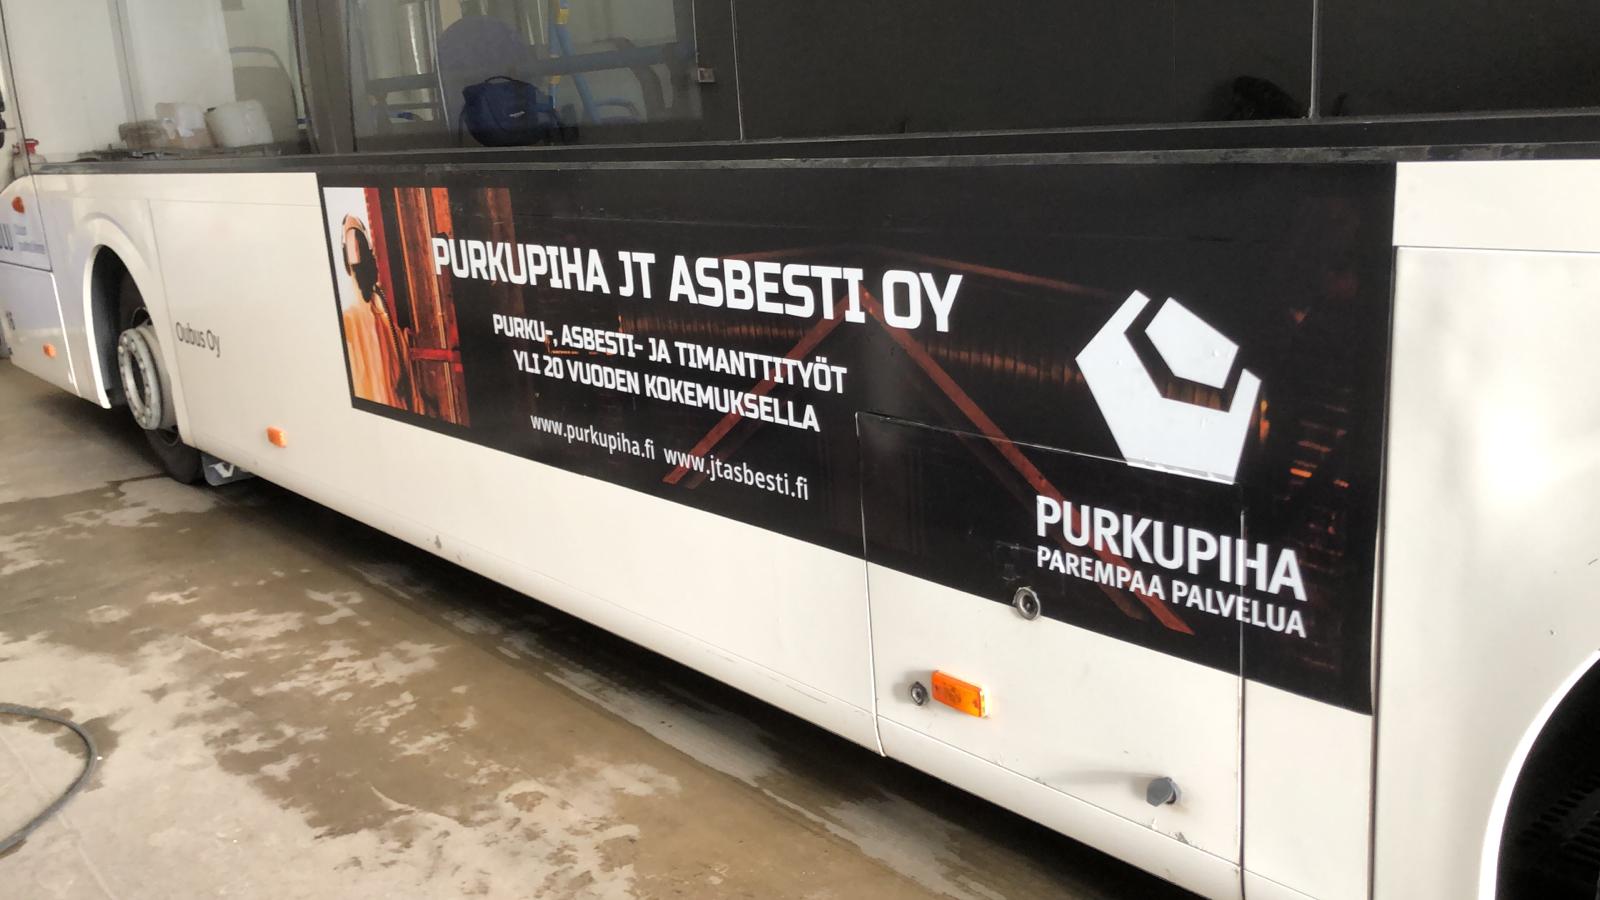 Bussimainonta | Kylkiteippaukset | Oulu-Oulunsalo 6